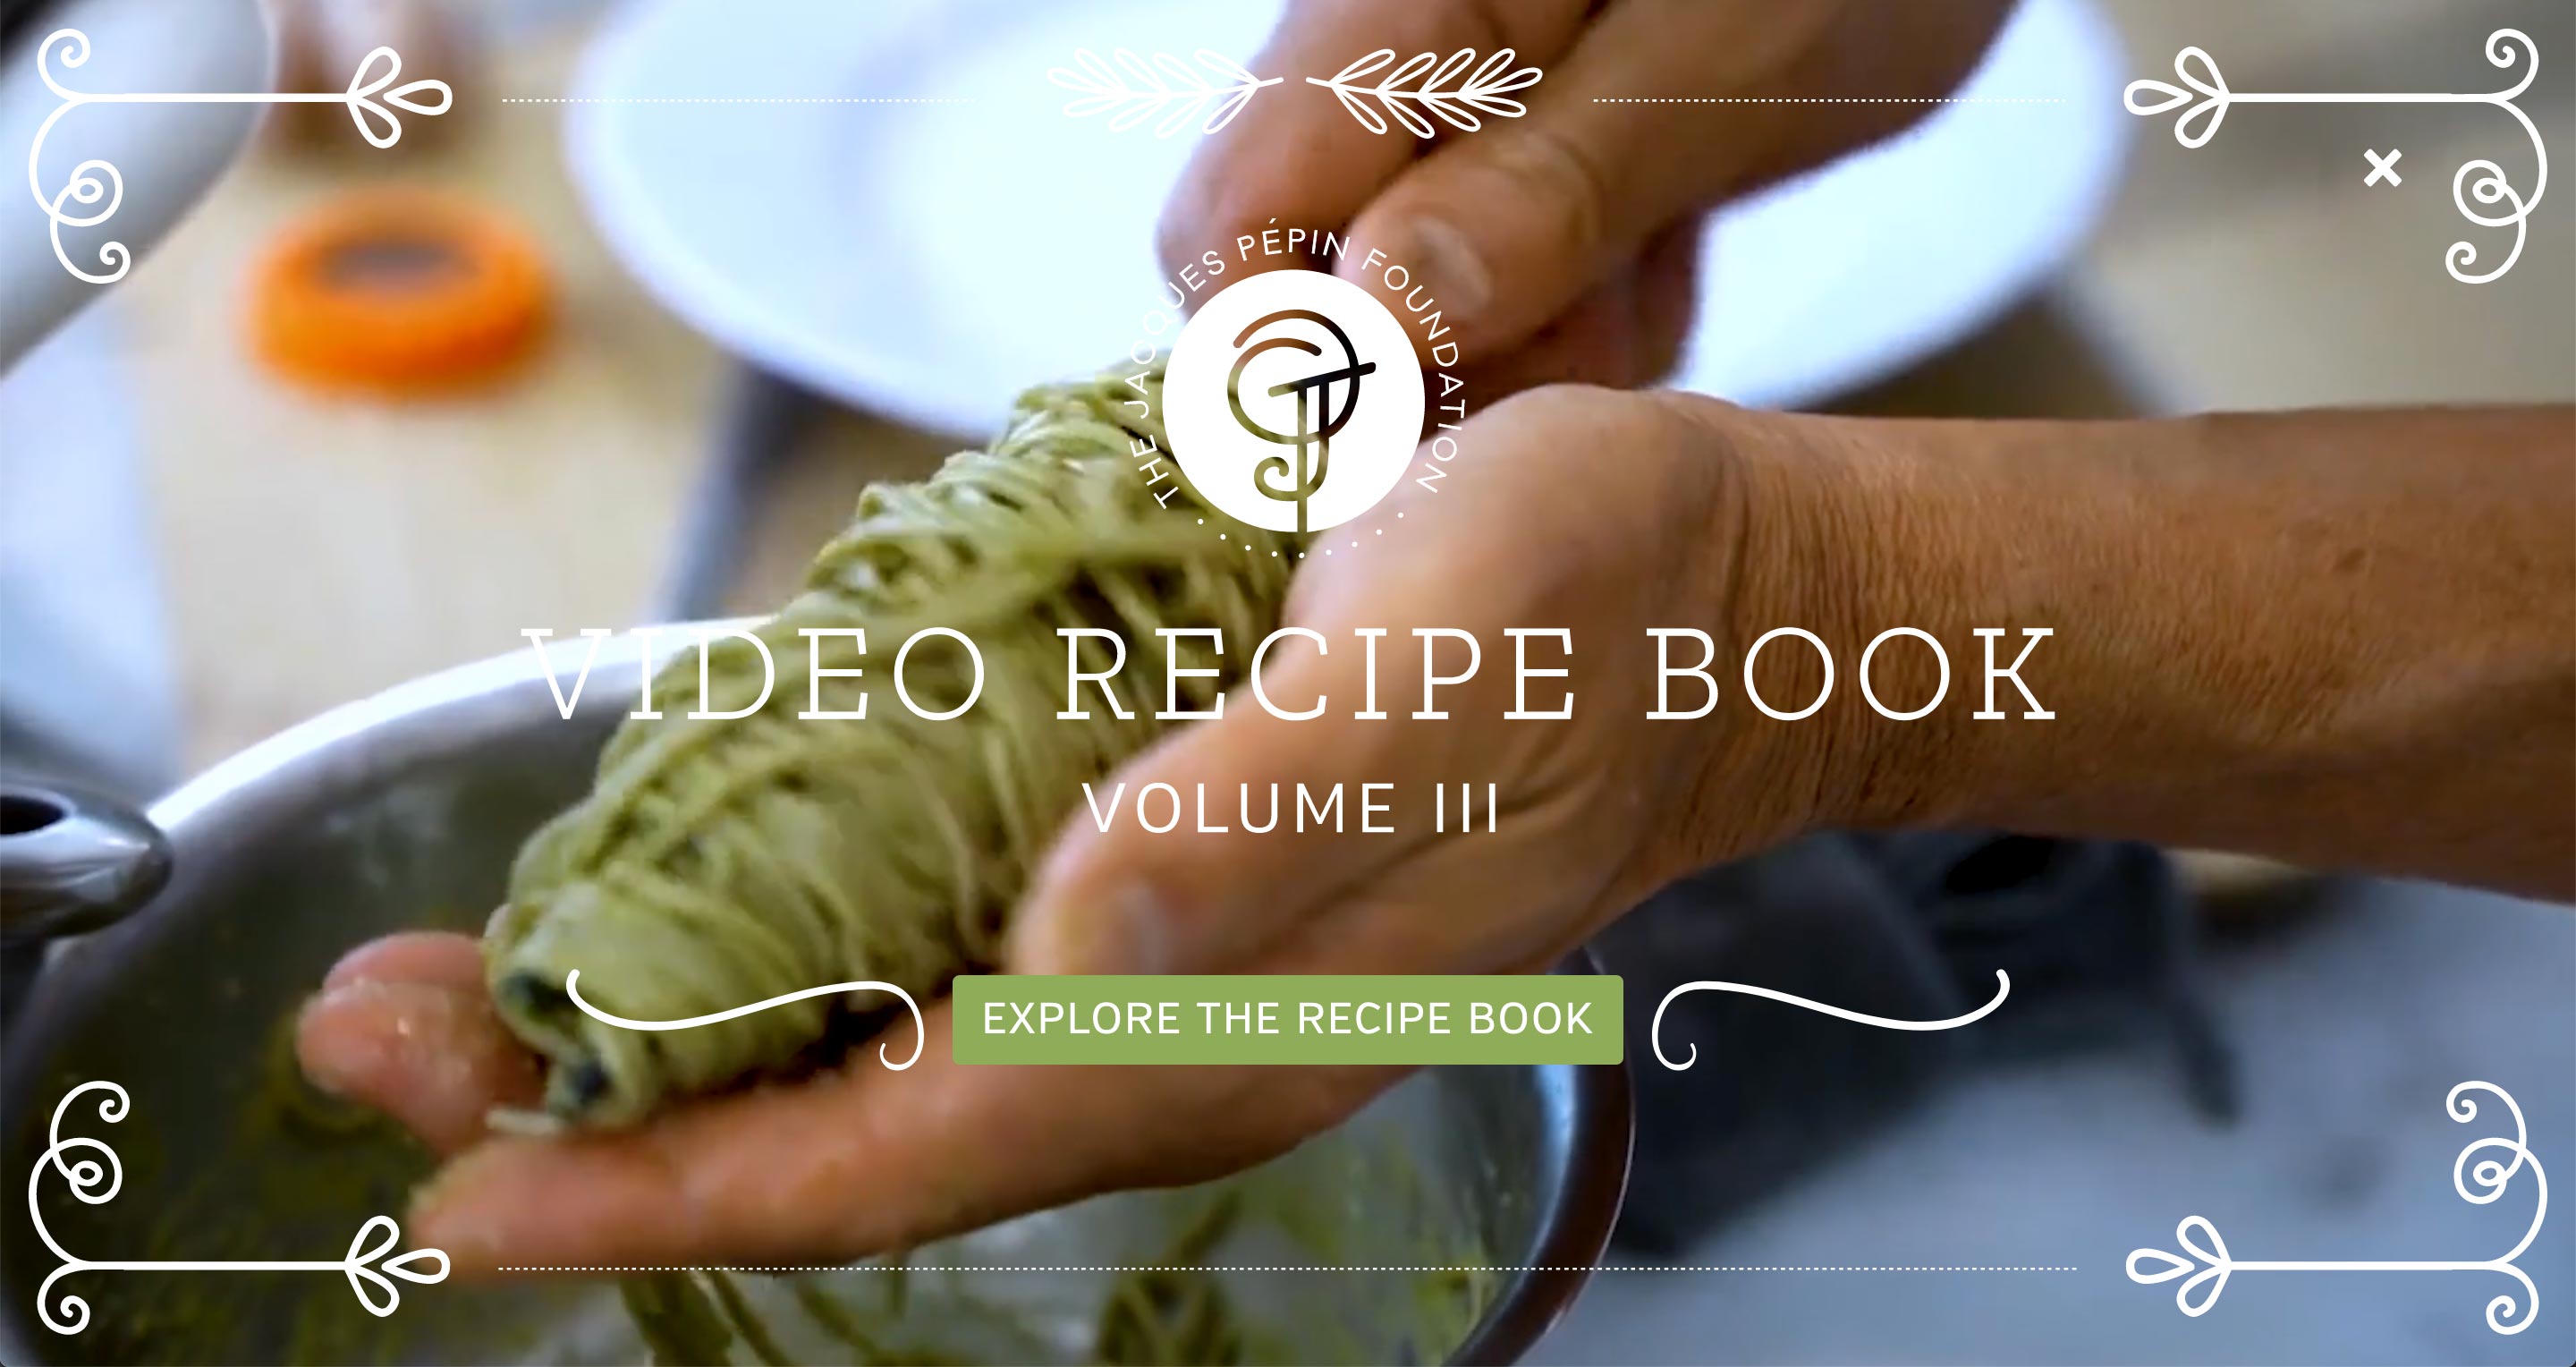 Video Recipe Book